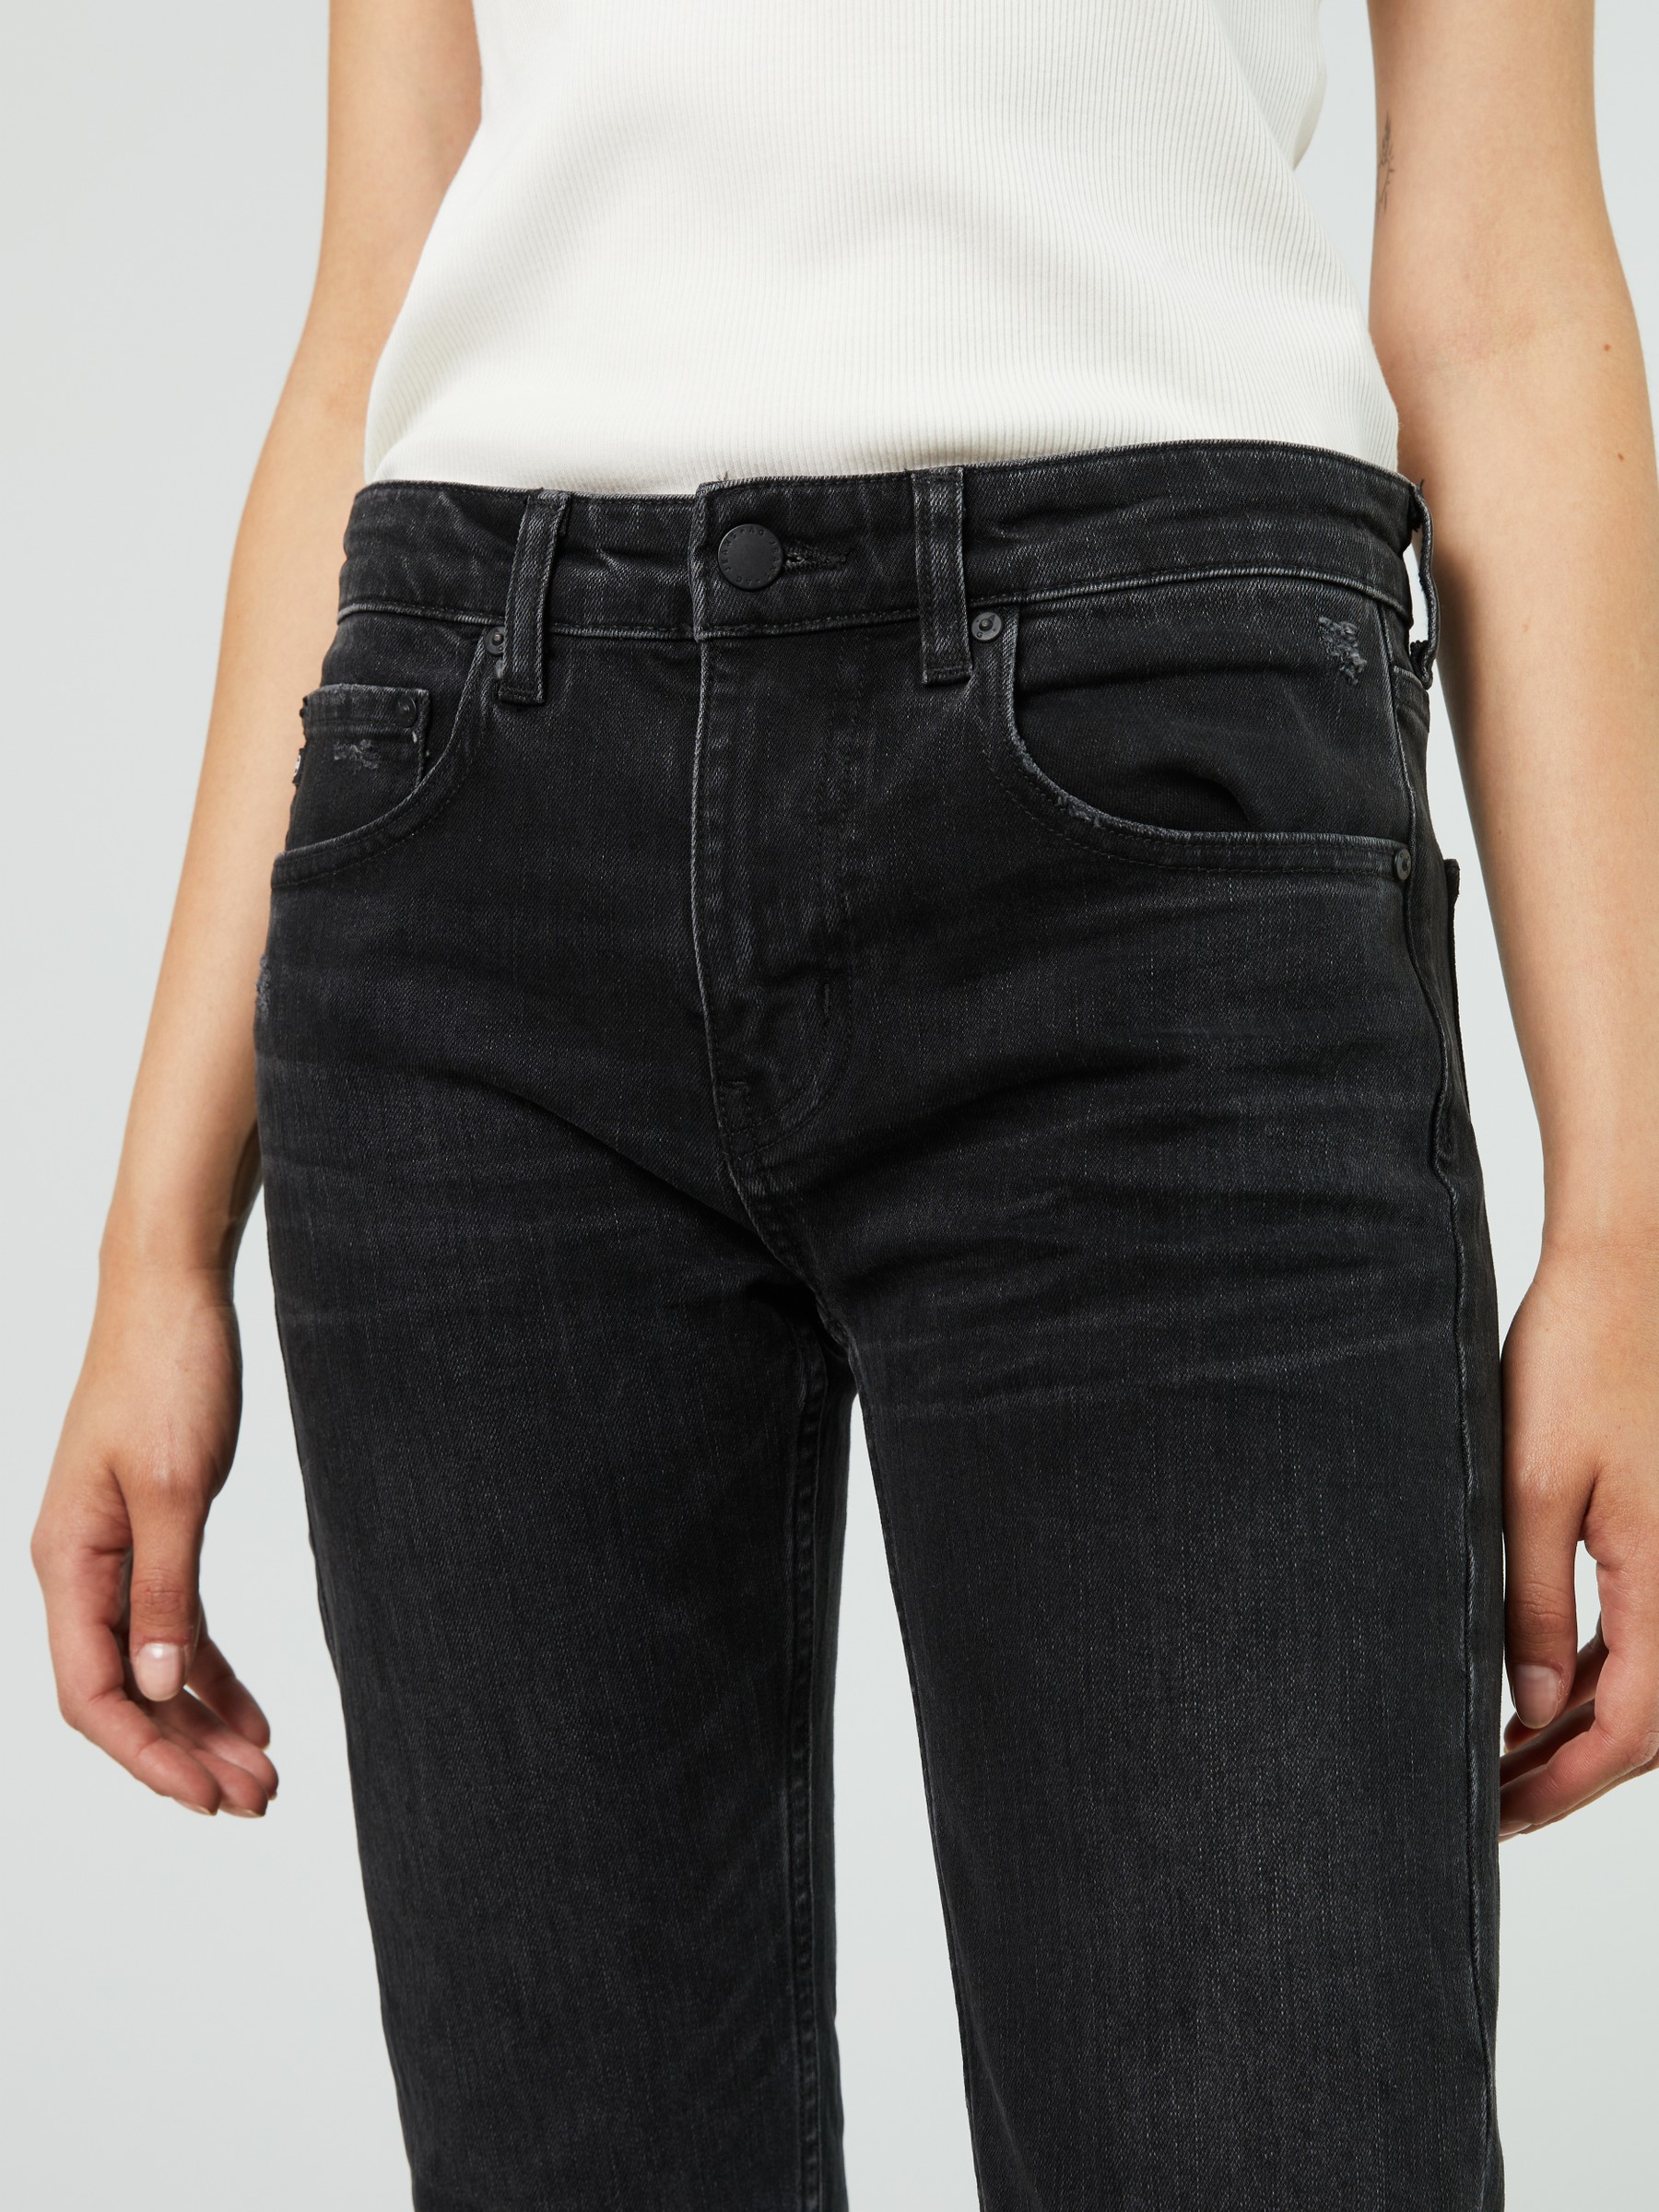 Damen Bekleidung Jeans Jeans mit gerader Passform AG Jeans Denim Straight-Leg Jeans Girlfriend Grau in Schwarz 